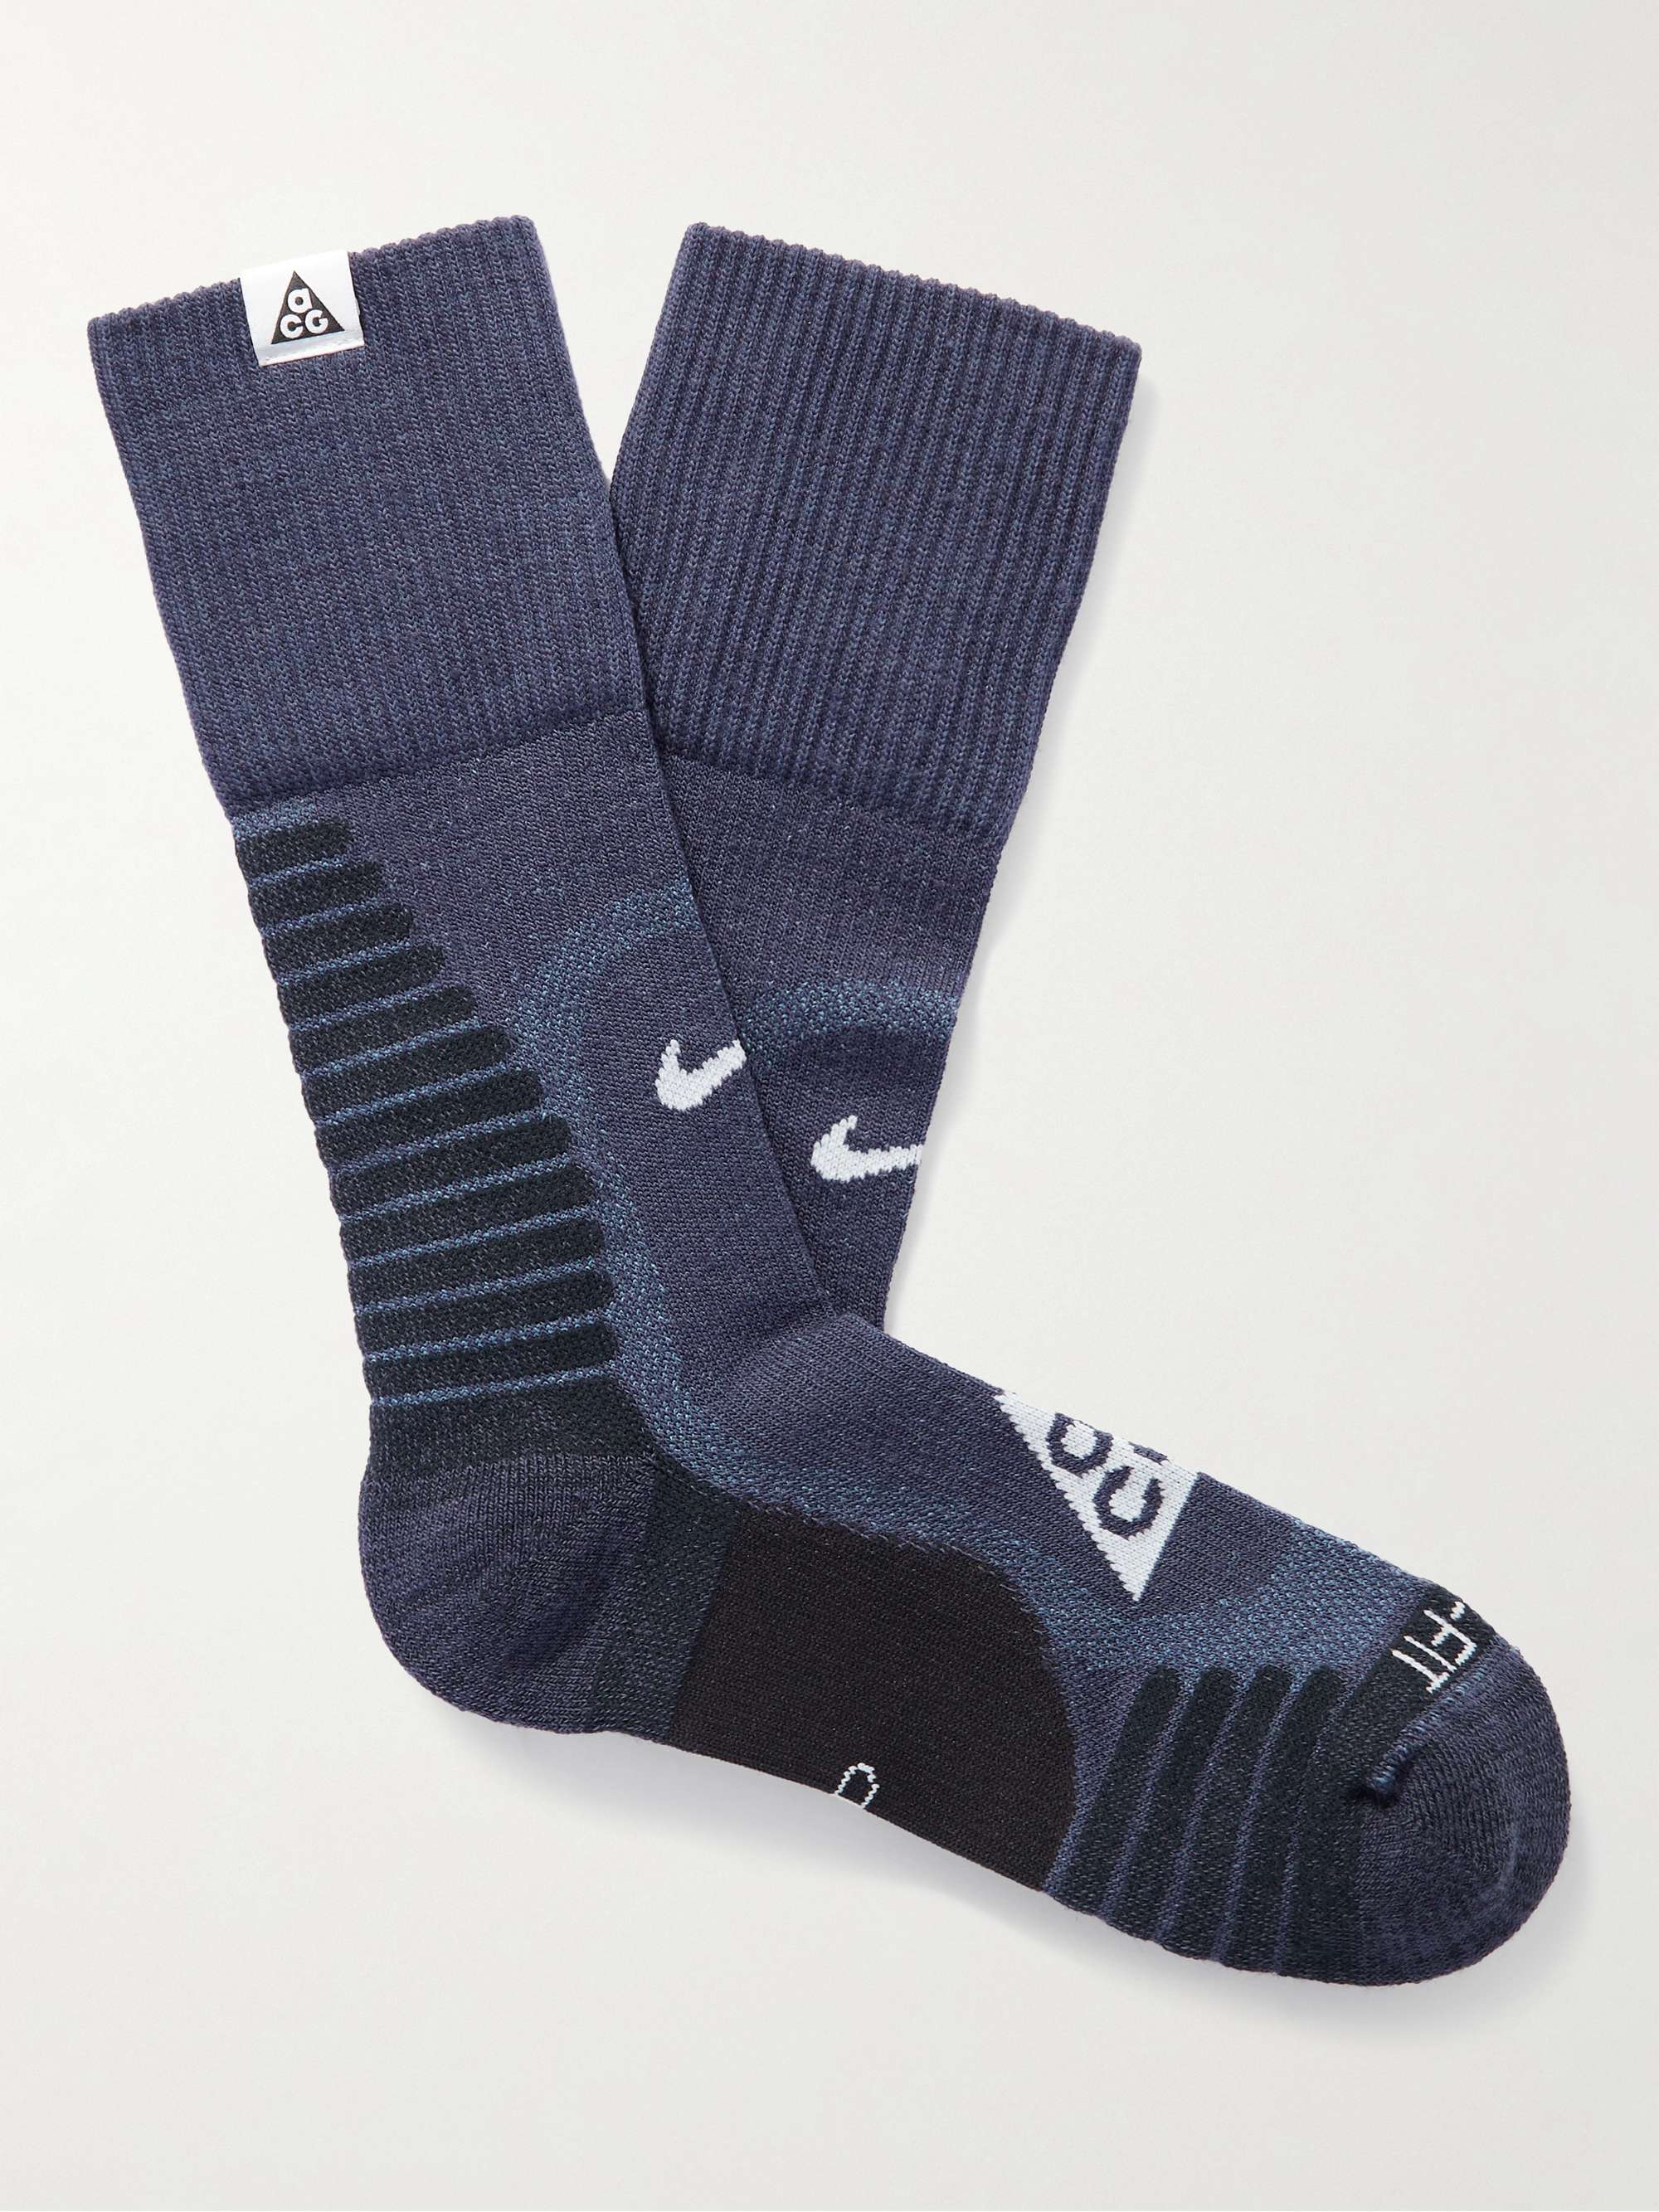 NIKE ACG Jacquard-Knit Socks for Men | MR PORTER